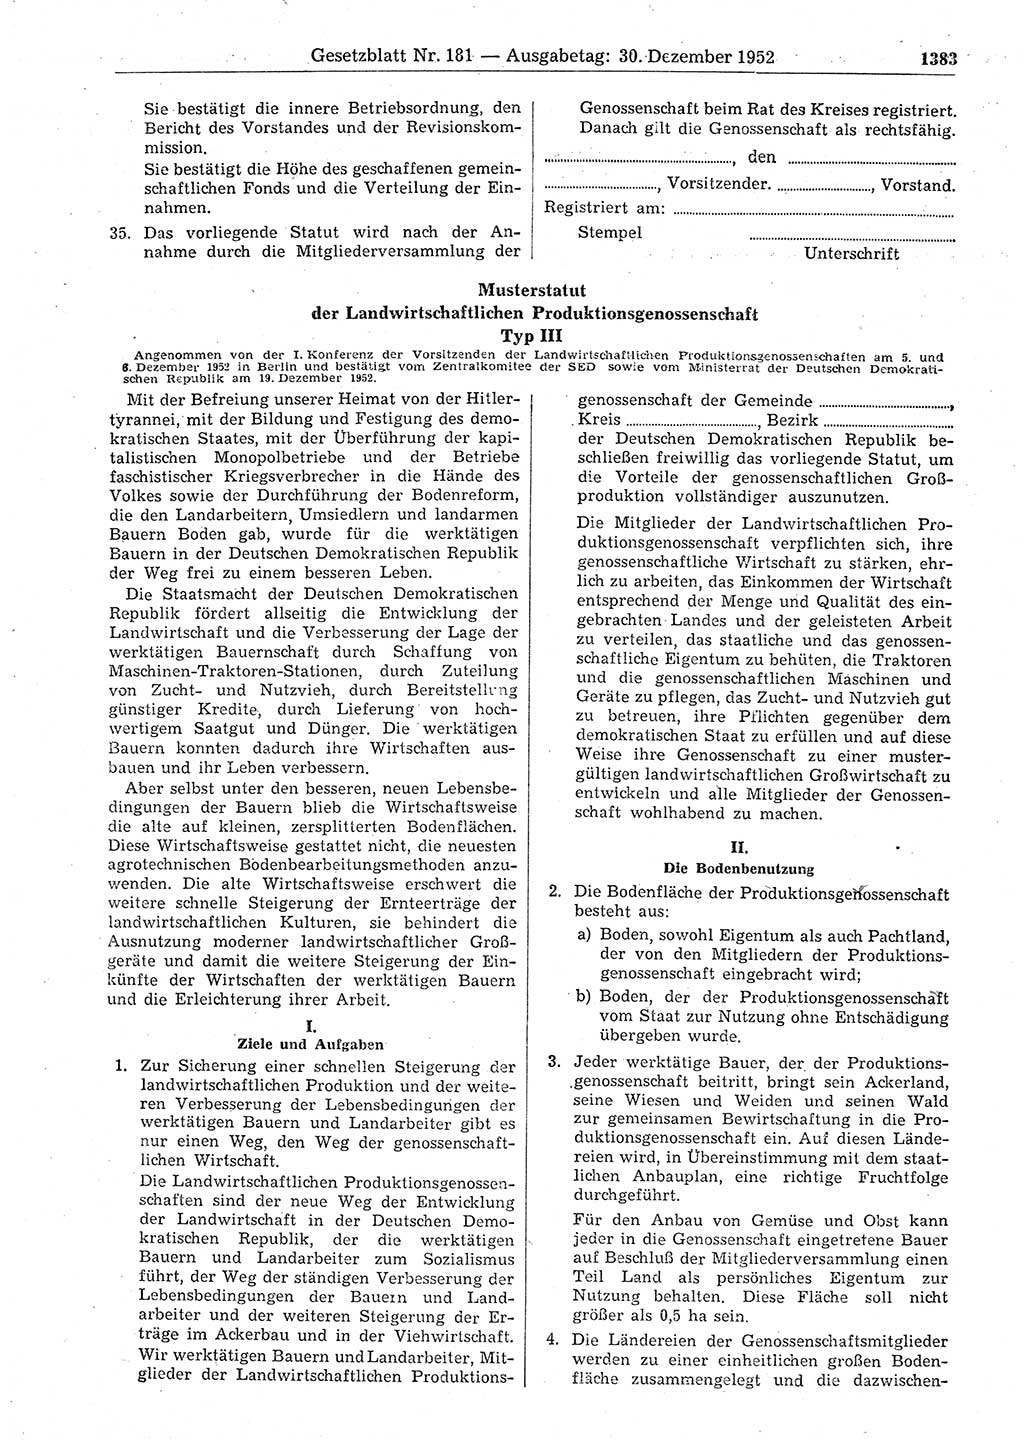 Gesetzblatt (GBl.) der Deutschen Demokratischen Republik (DDR) 1952, Seite 1383 (GBl. DDR 1952, S. 1383)